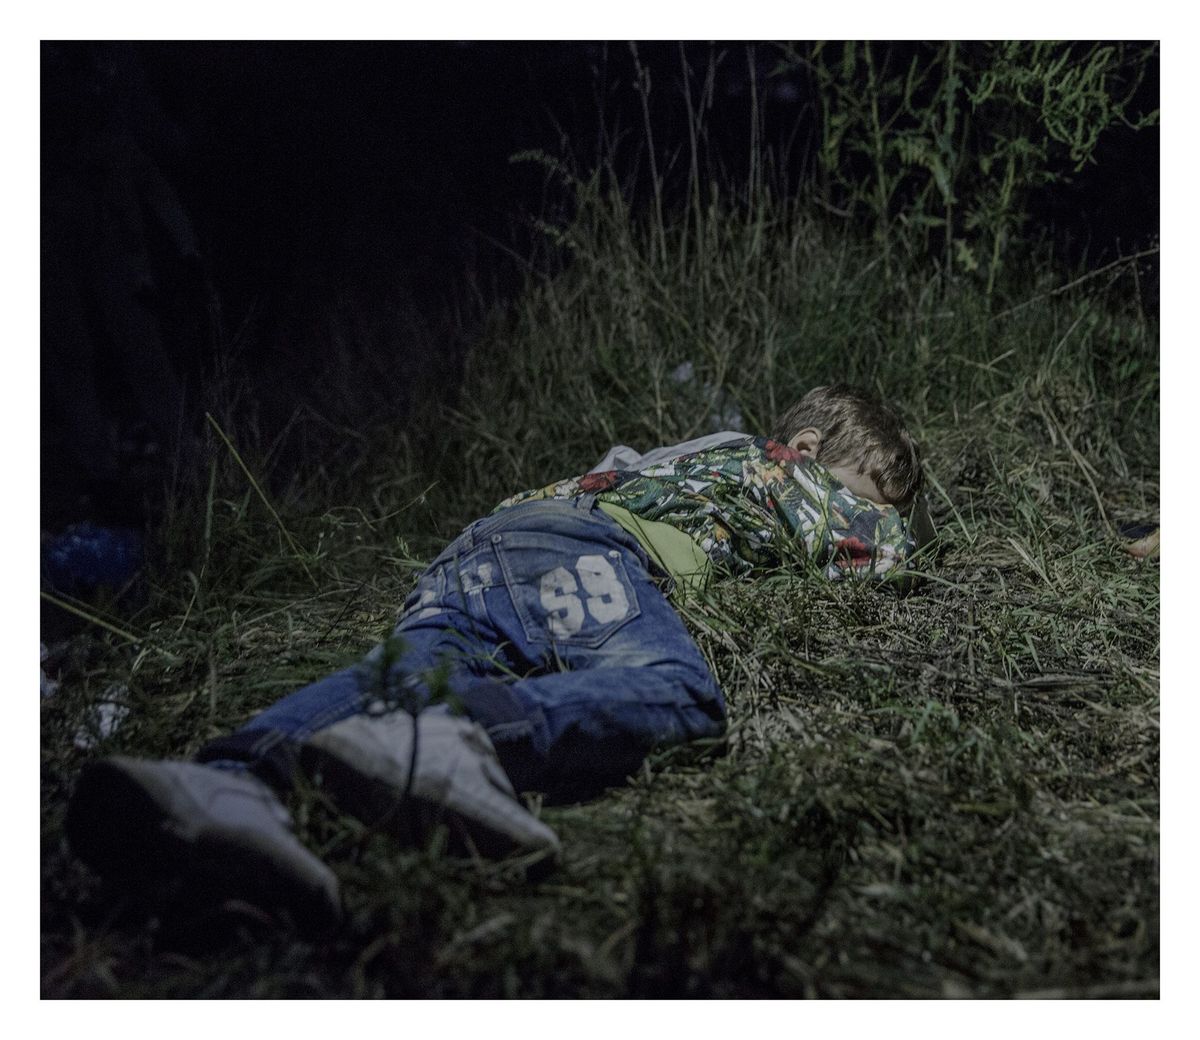 Terwijl volwassenen plannen maken om aan de autoriteiten in Hongarije te ontkomen slaapt Ahmed 6 in het gras Nadat zijn vader in het noorden van Syri werd gedood heeft Ahmed lopend met zijn familie afstanden afgelegd Hij draagt onderweg zijn eigen tas